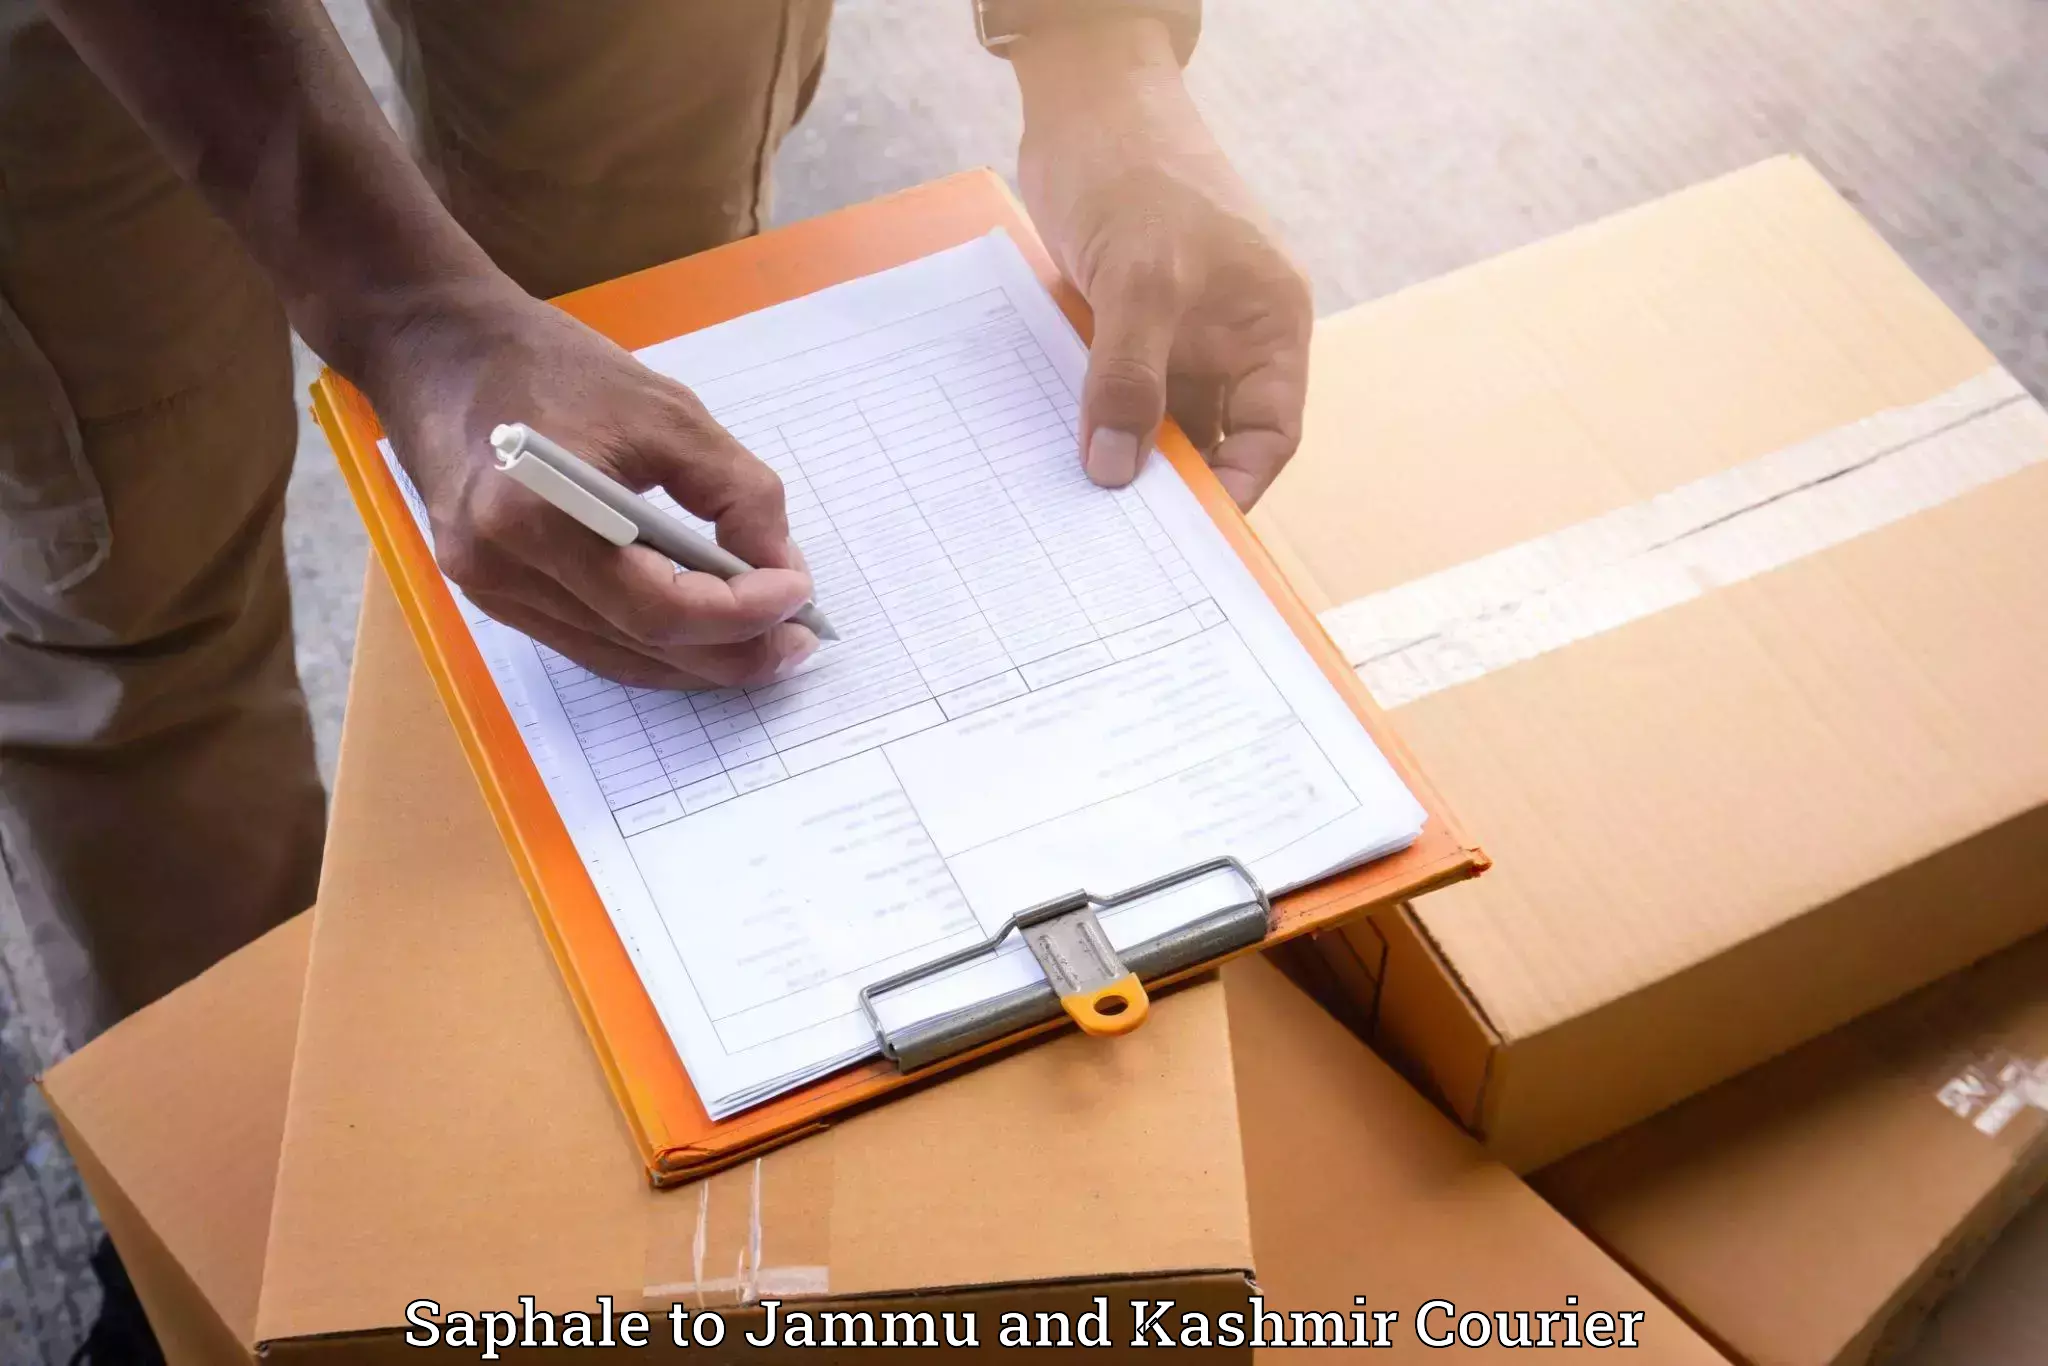 Furniture delivery service Saphale to University of Kashmir Srinagar